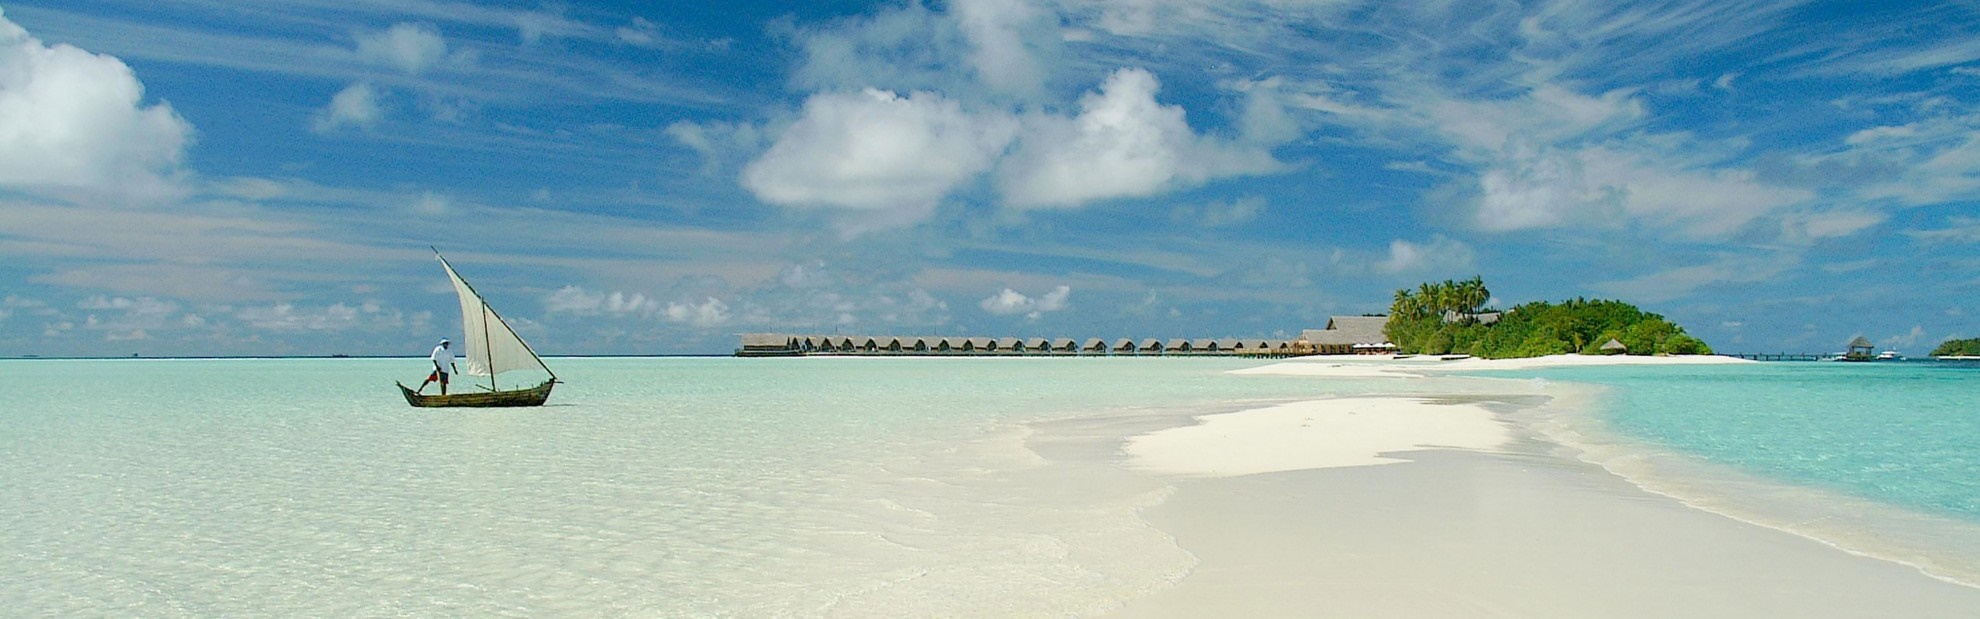 como-cocoa-island-maldives-indian-ocean